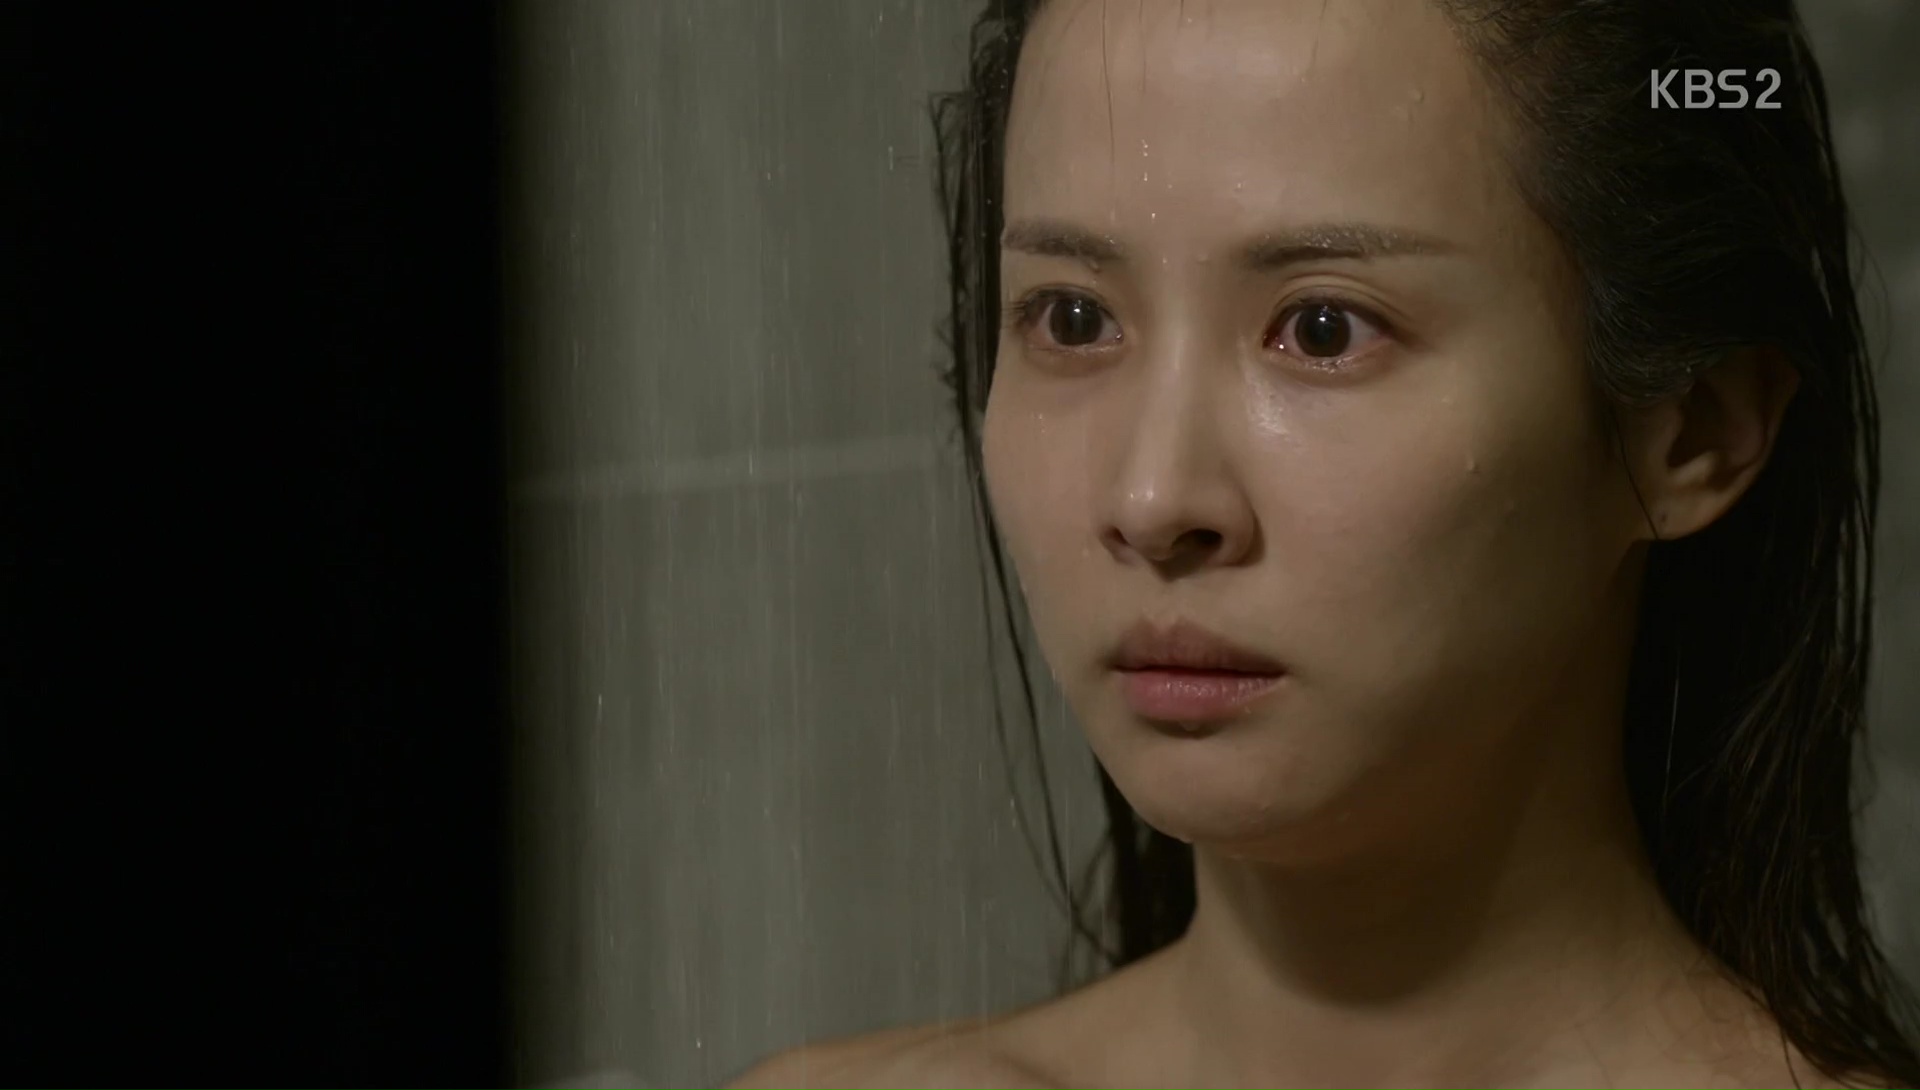 5 diễn viên Hàn bị ám ảnh tâm lý vì vai diễn: Seo Ye Ji - Lee Jun Ki trầm cảm, số 5 còn tìm tới cái chết  - Ảnh 6.